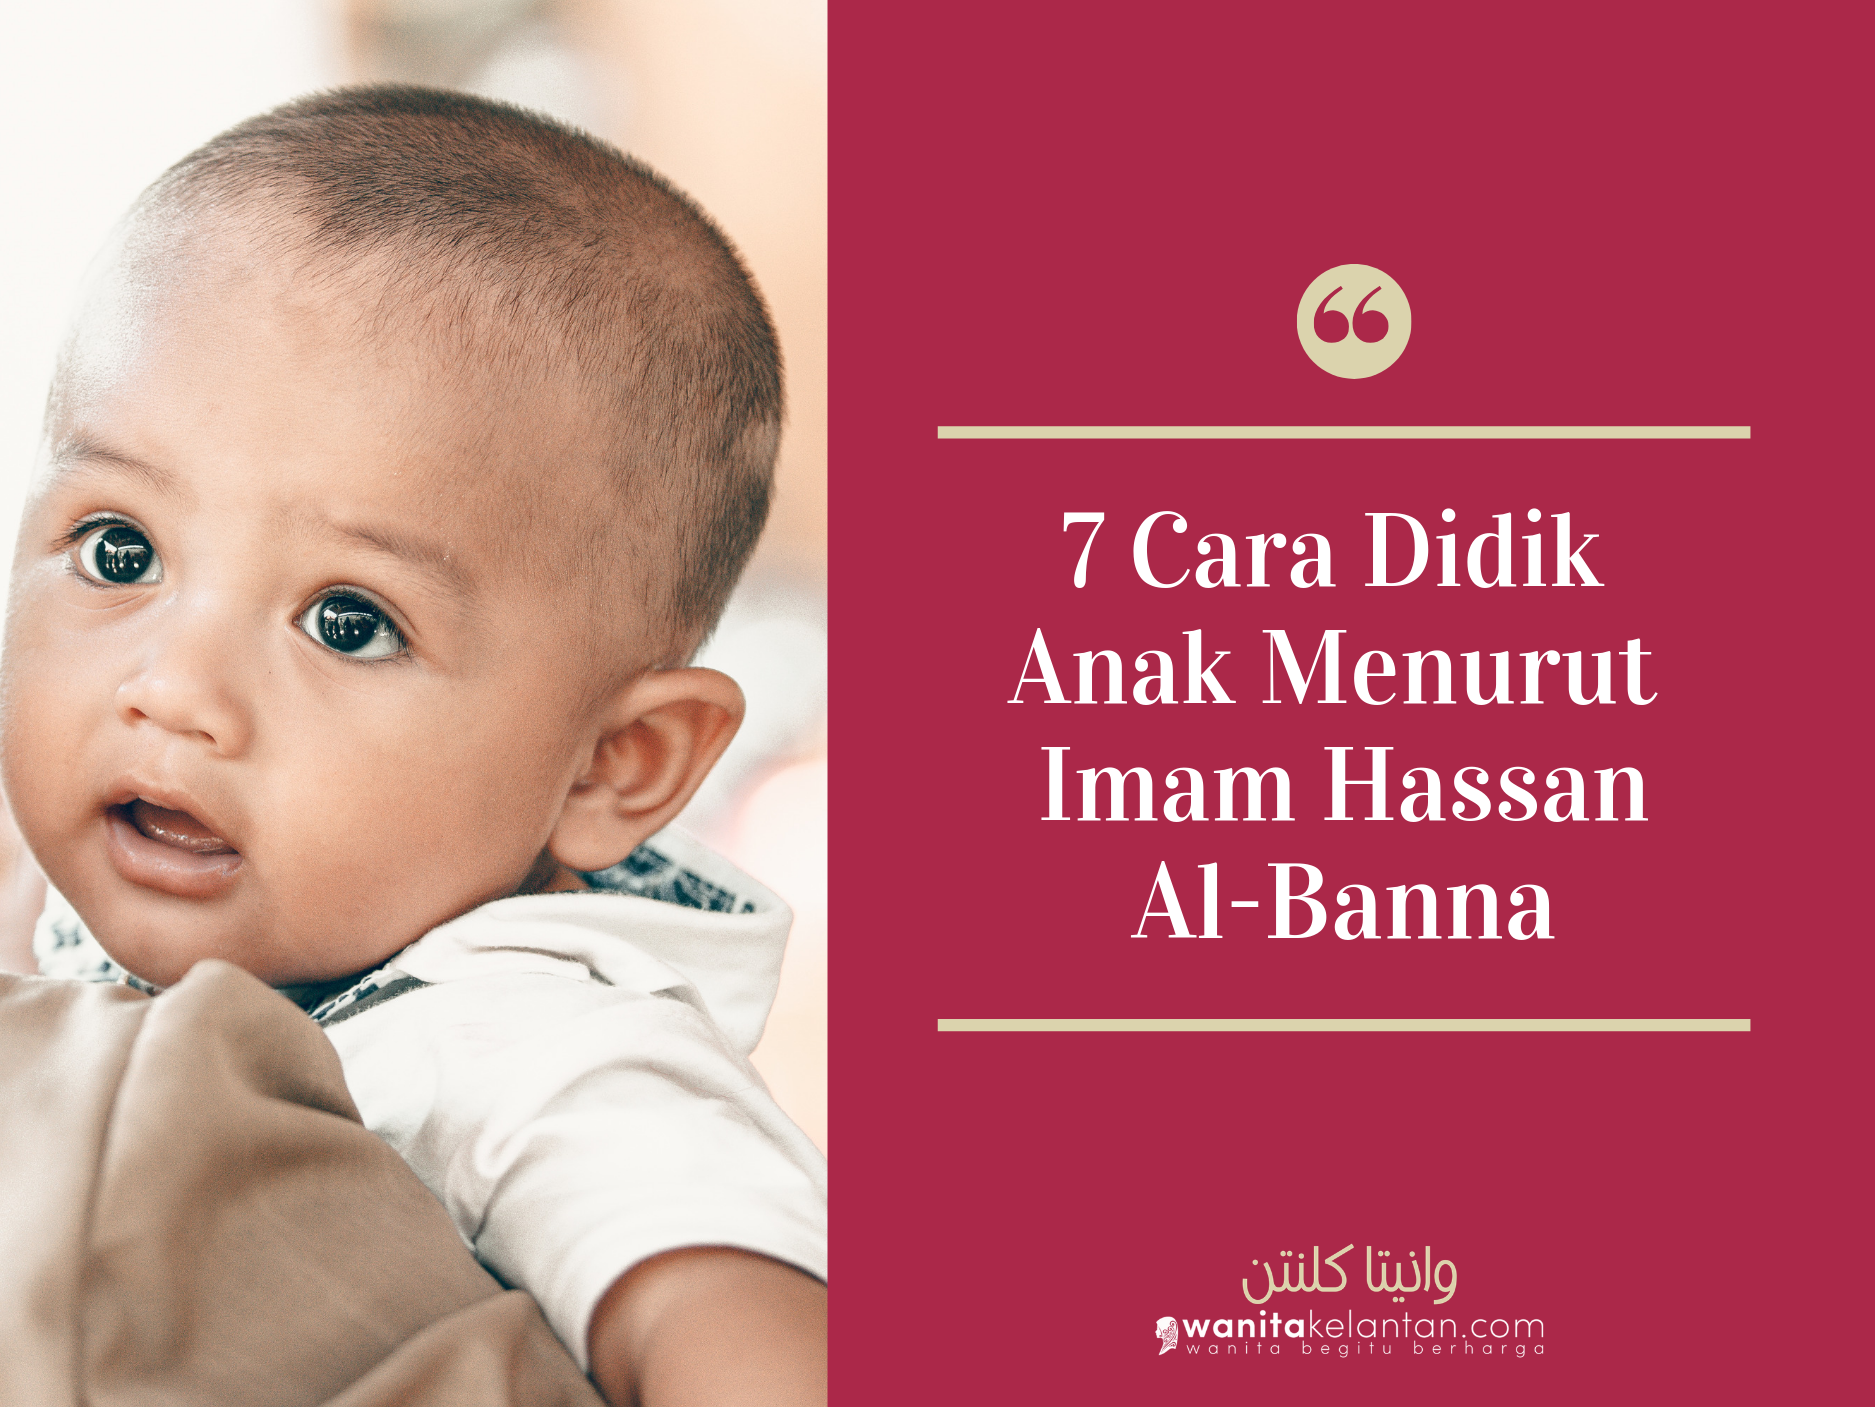 Tujuh Cara Didikan Anak-Anak Menurut Imam Hassan Al Banna